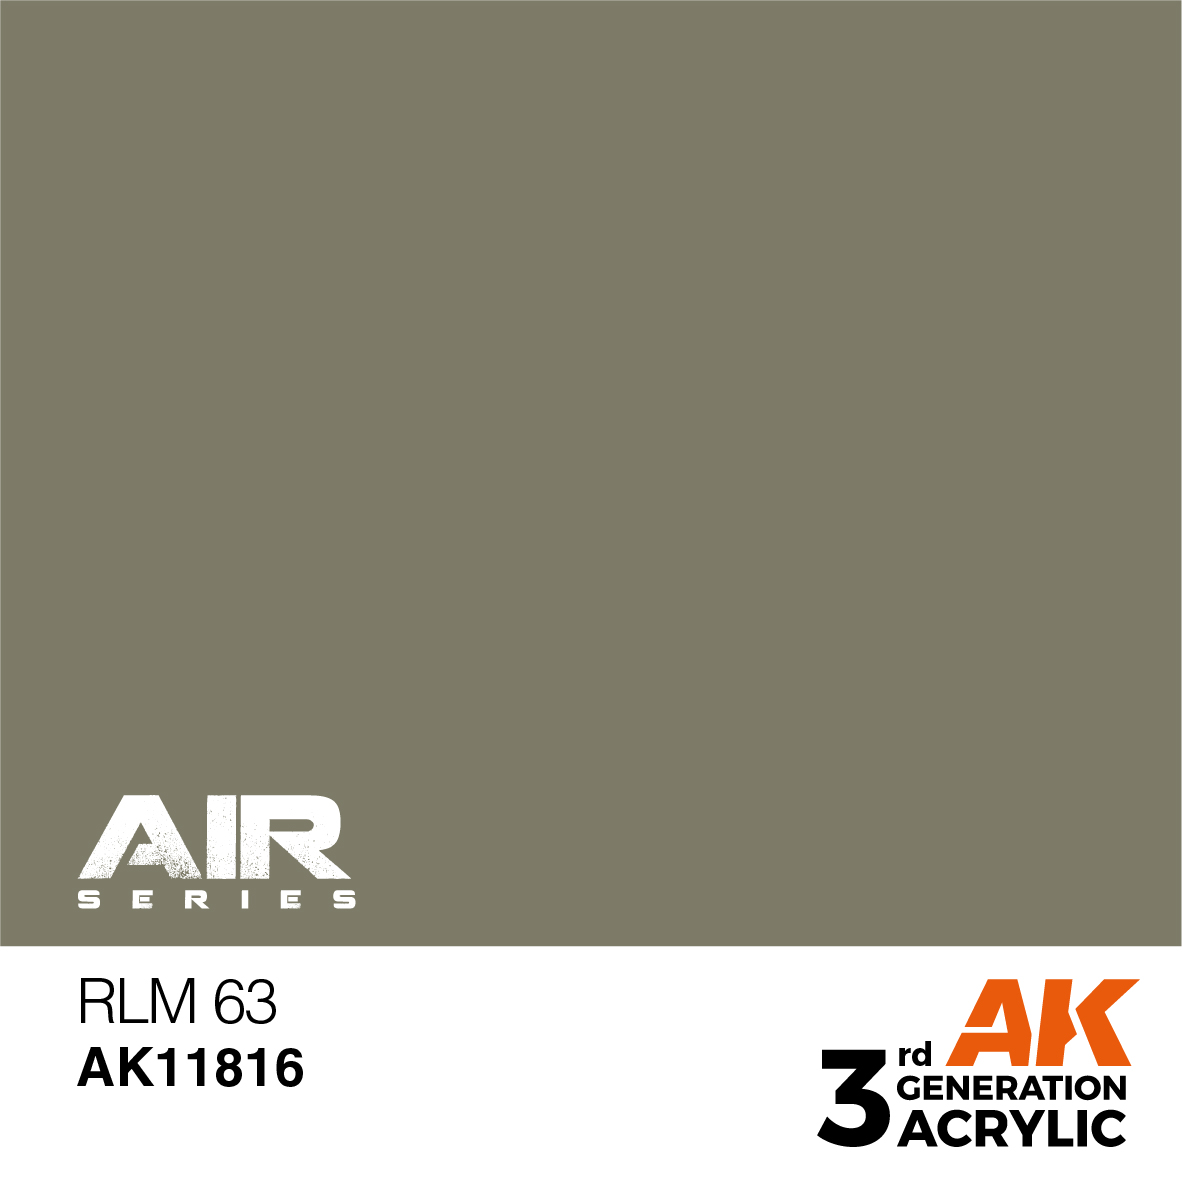 RLM 63 – AIR